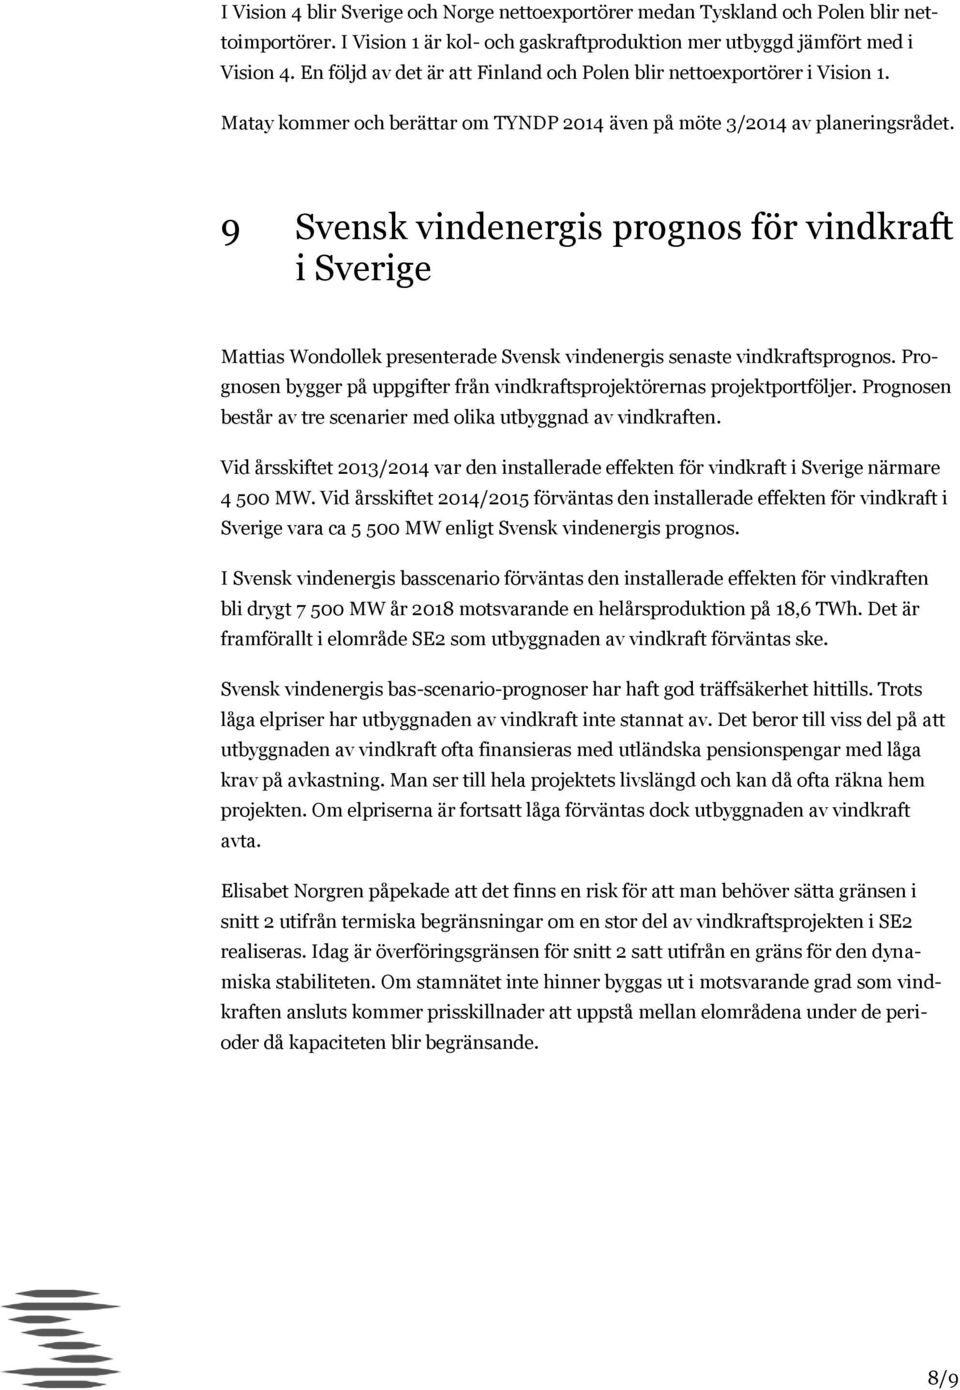 9 Svensk vindenergis prognos för vindkraft i Sverige Mattias Wondollek presenterade Svensk vindenergis senaste vindkraftsprognos.